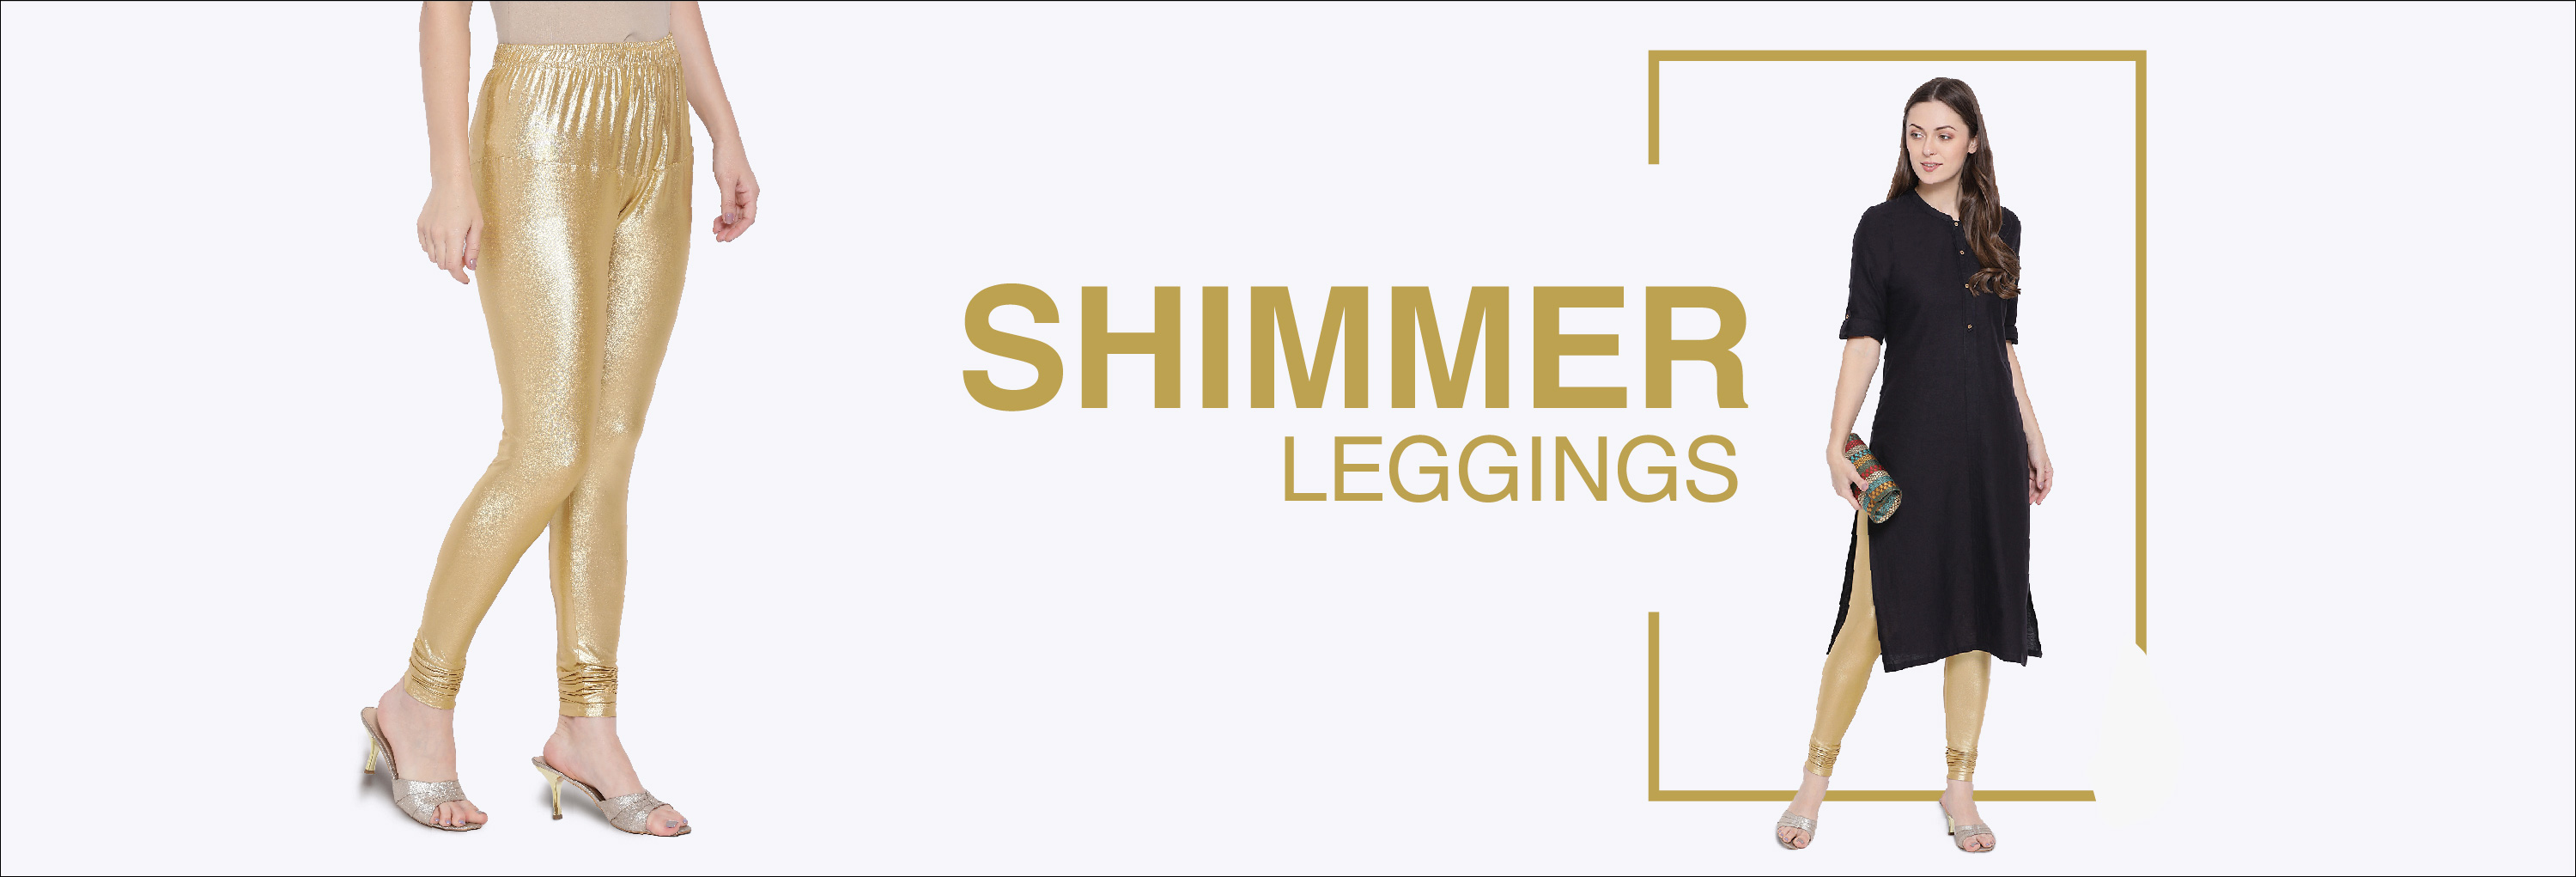 Shimmer Leggings - Buy Shimmer Leggings Online Starting at Just ₹162